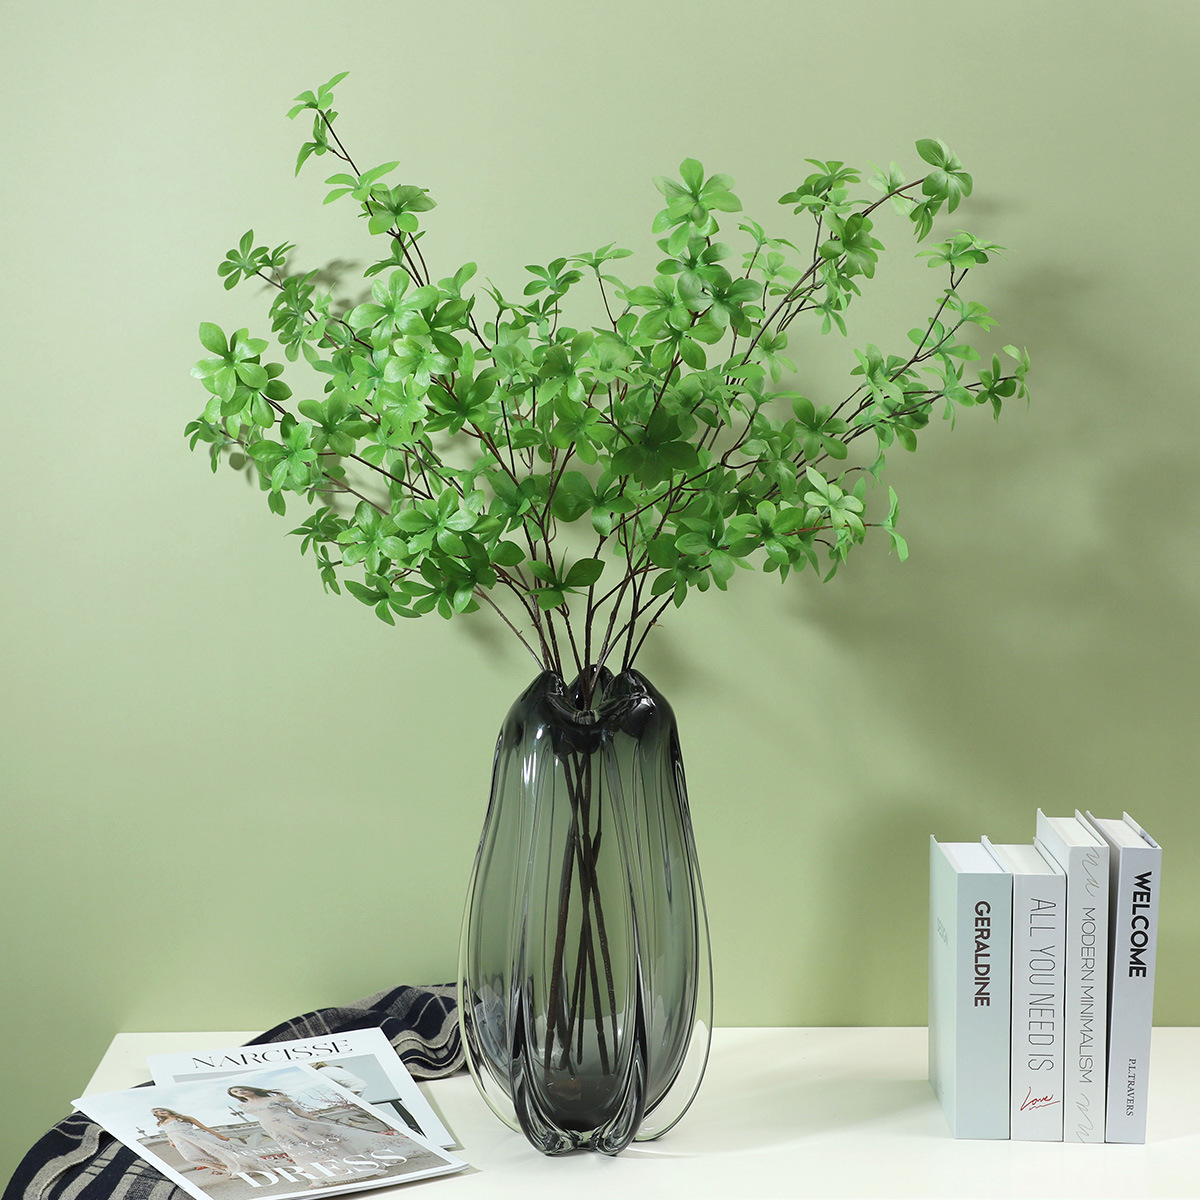 Simulation grüne Pflanzen künstliche Blume dekorativ hängende Bellblatt Home Wohnzimmer Weiche Dekoration Künstliche Blätter Großhandel Großhandel